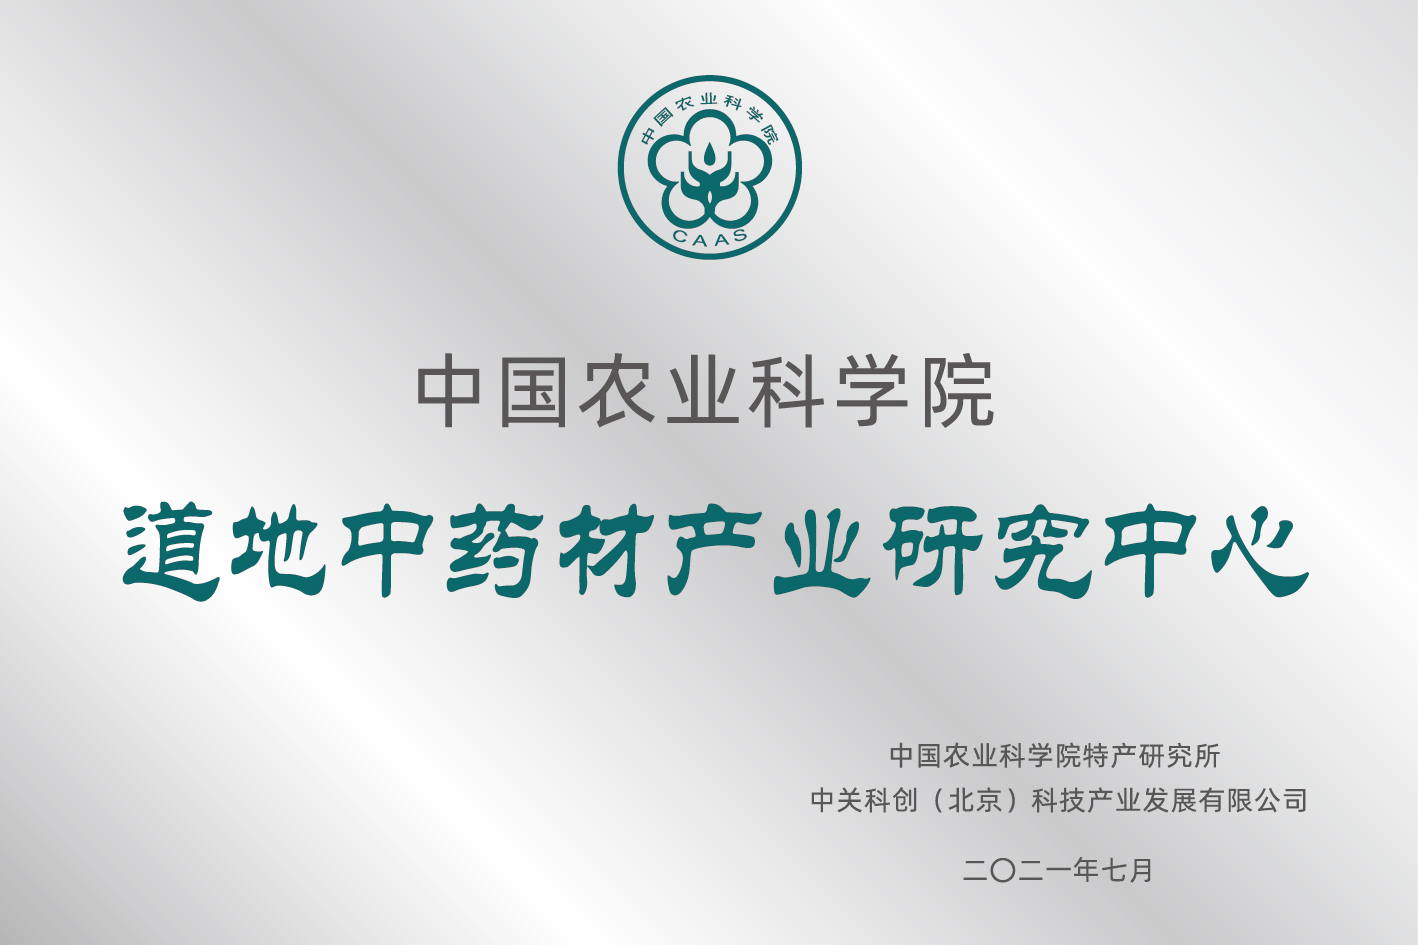 2021年8月，与中国农业科学院特产研究所签约成立“中国农业科学院·道地中药材产业研究中心”